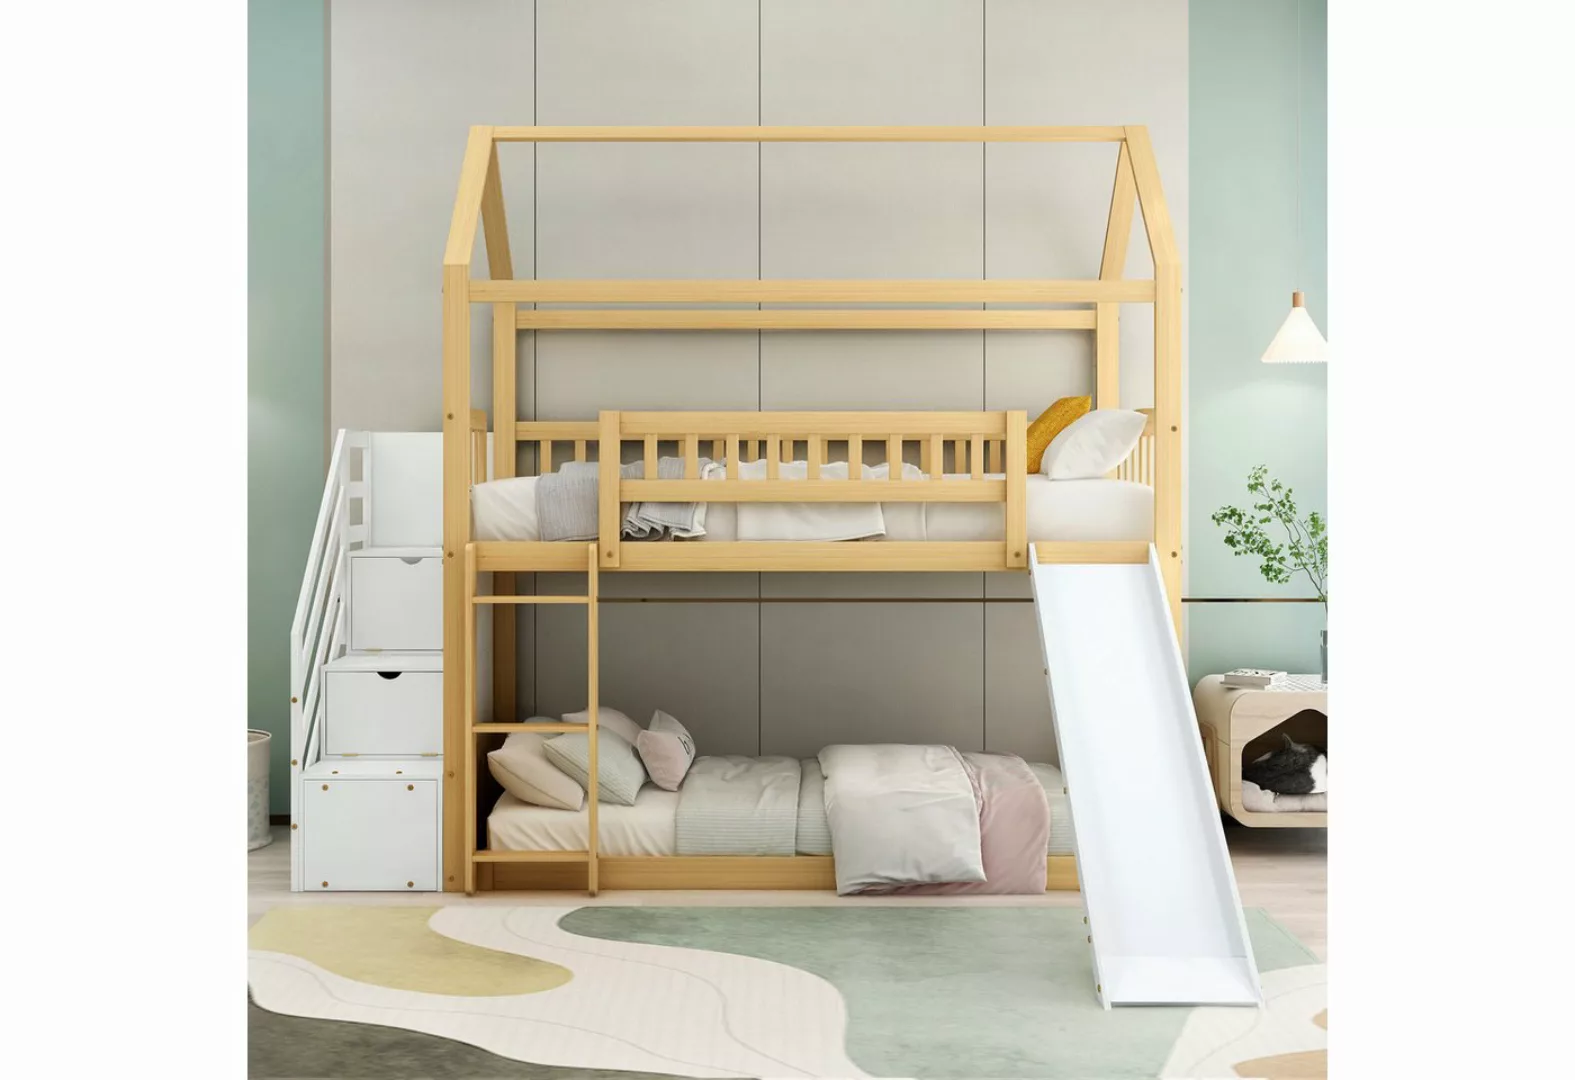 IDEASY Etagenbett Kinderbett, Jugendbett, 90 x 200 cm, sturzsicher, (dreist günstig online kaufen